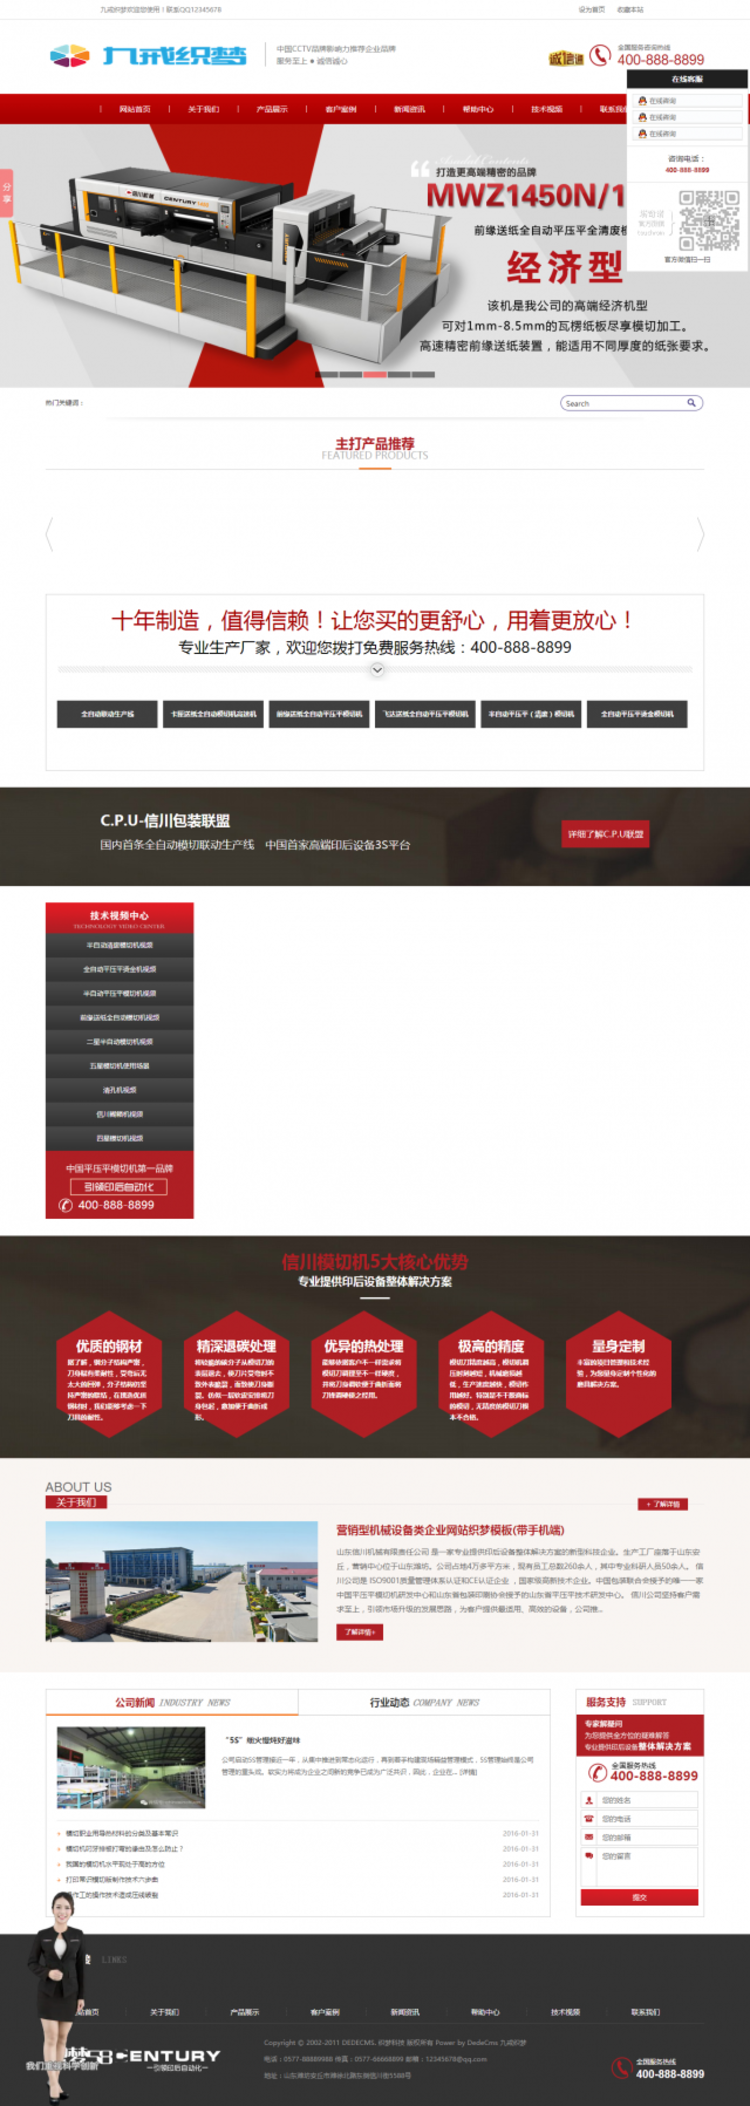 营销型机械设备类企业网站织梦模板(带手机端)电脑端演示